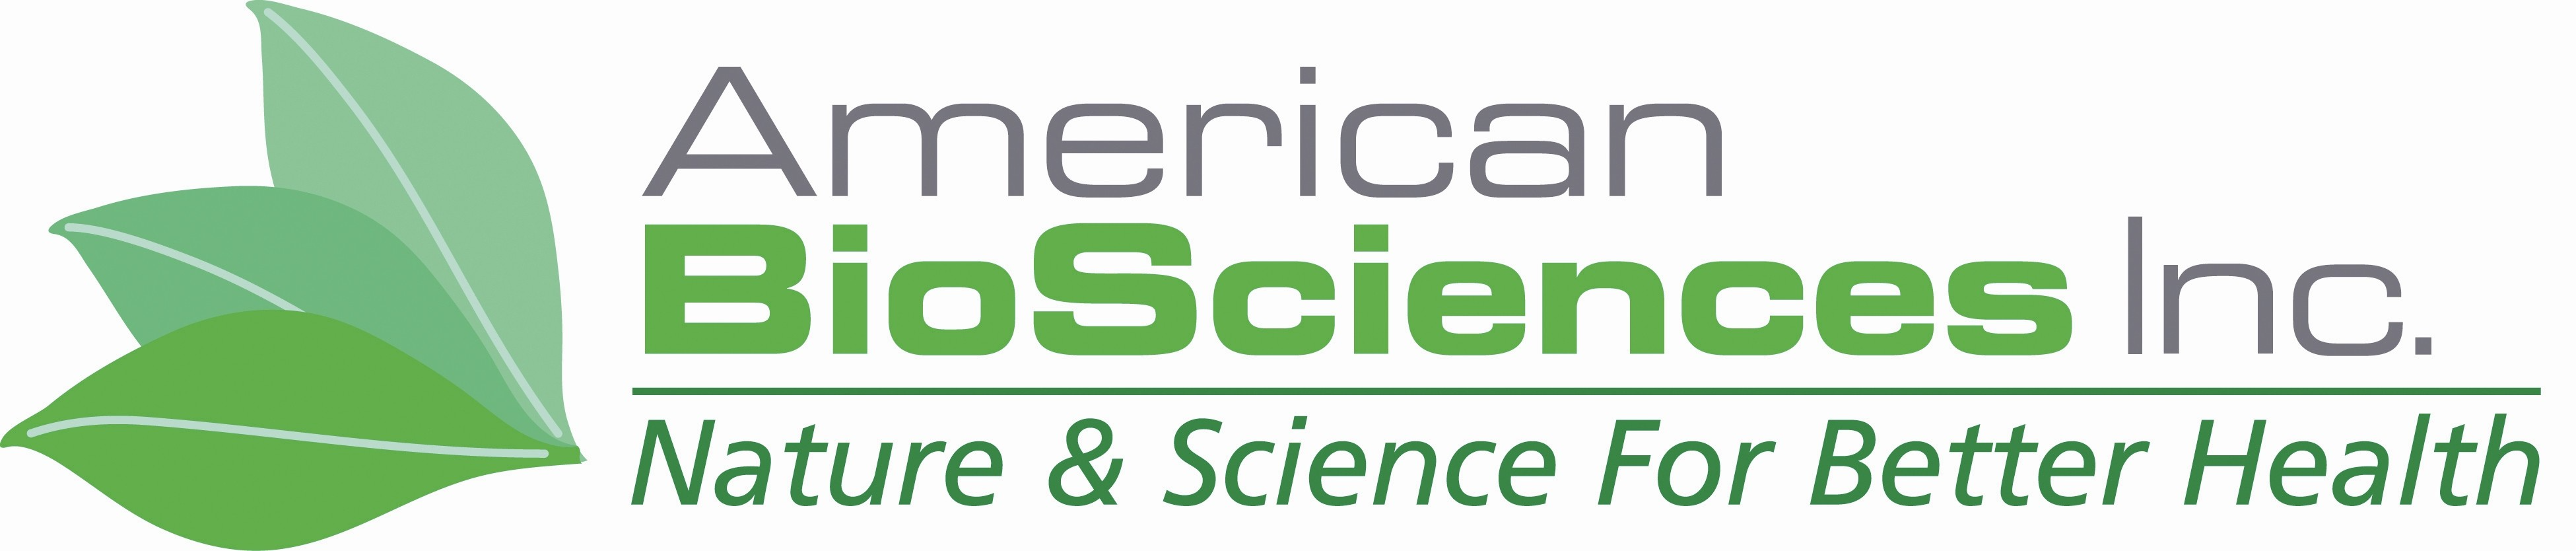 american biosciences